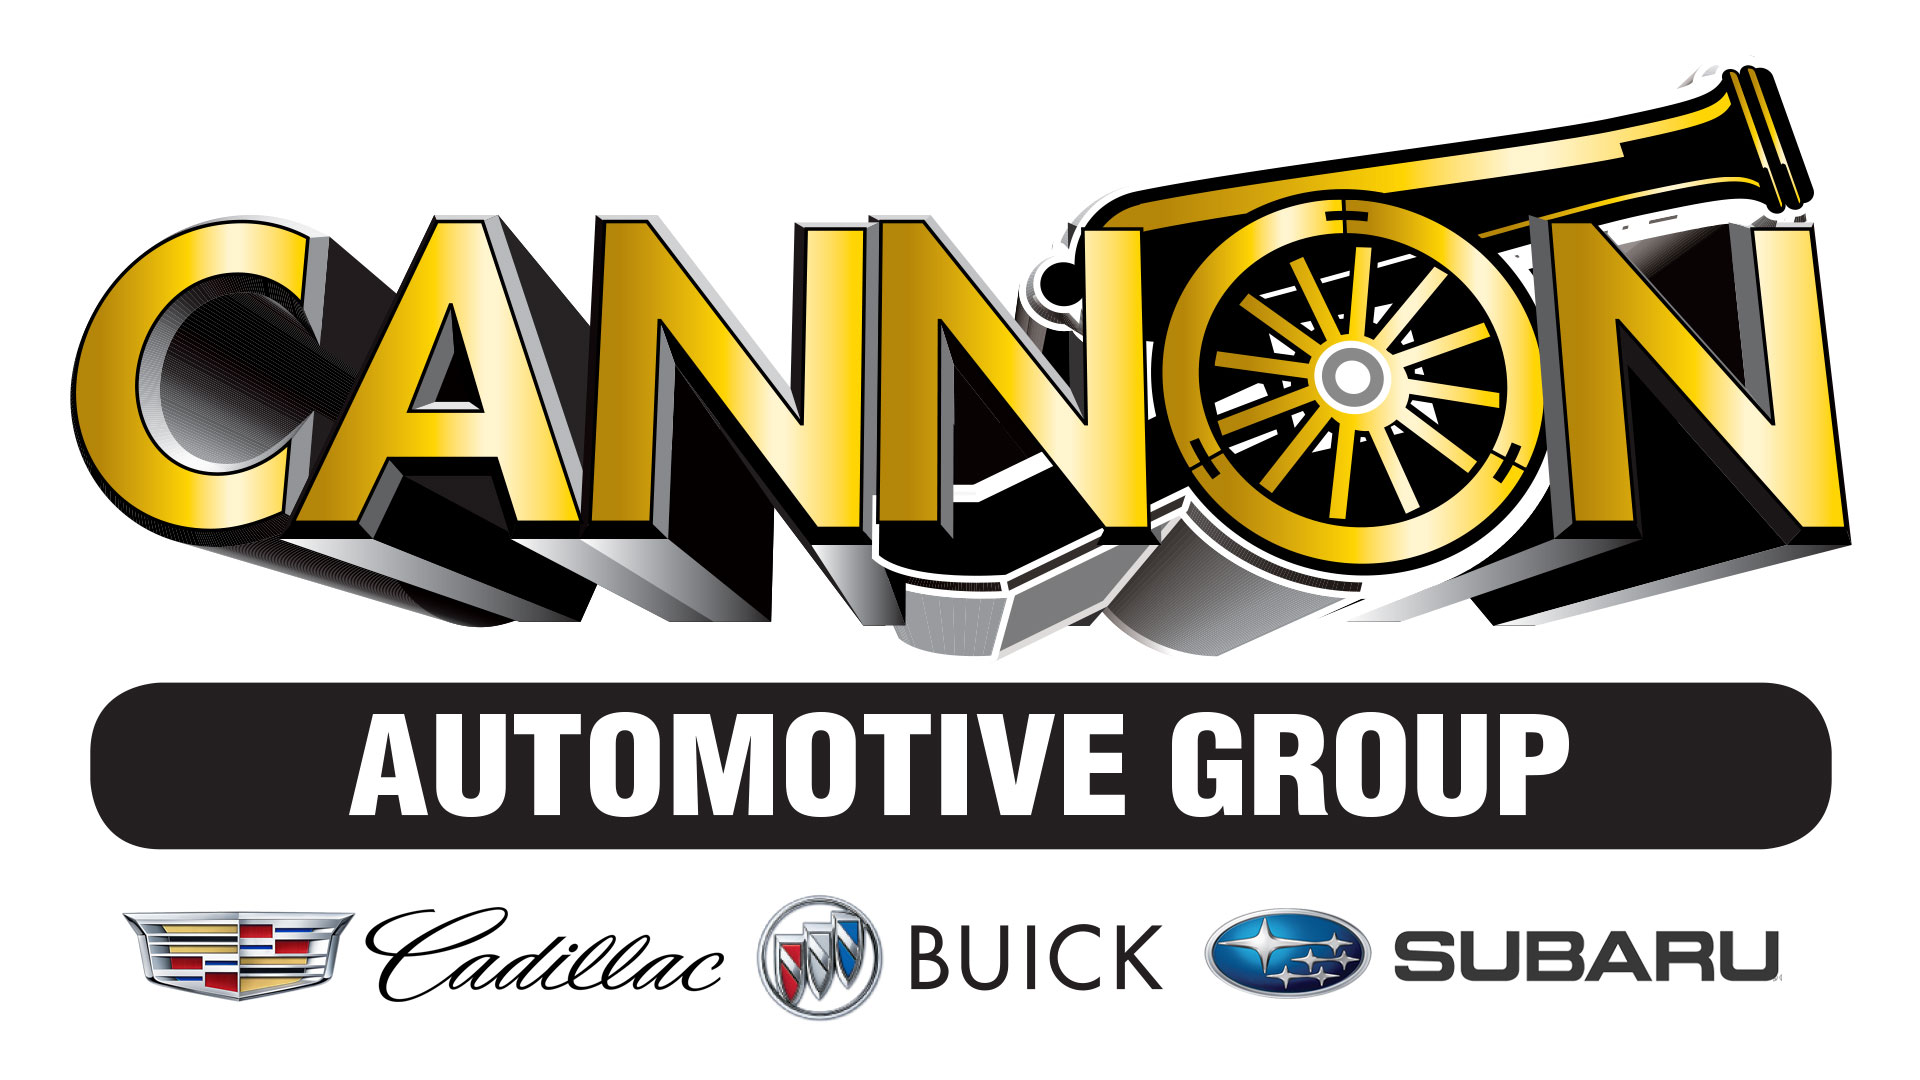 Cannon Automotive Group 